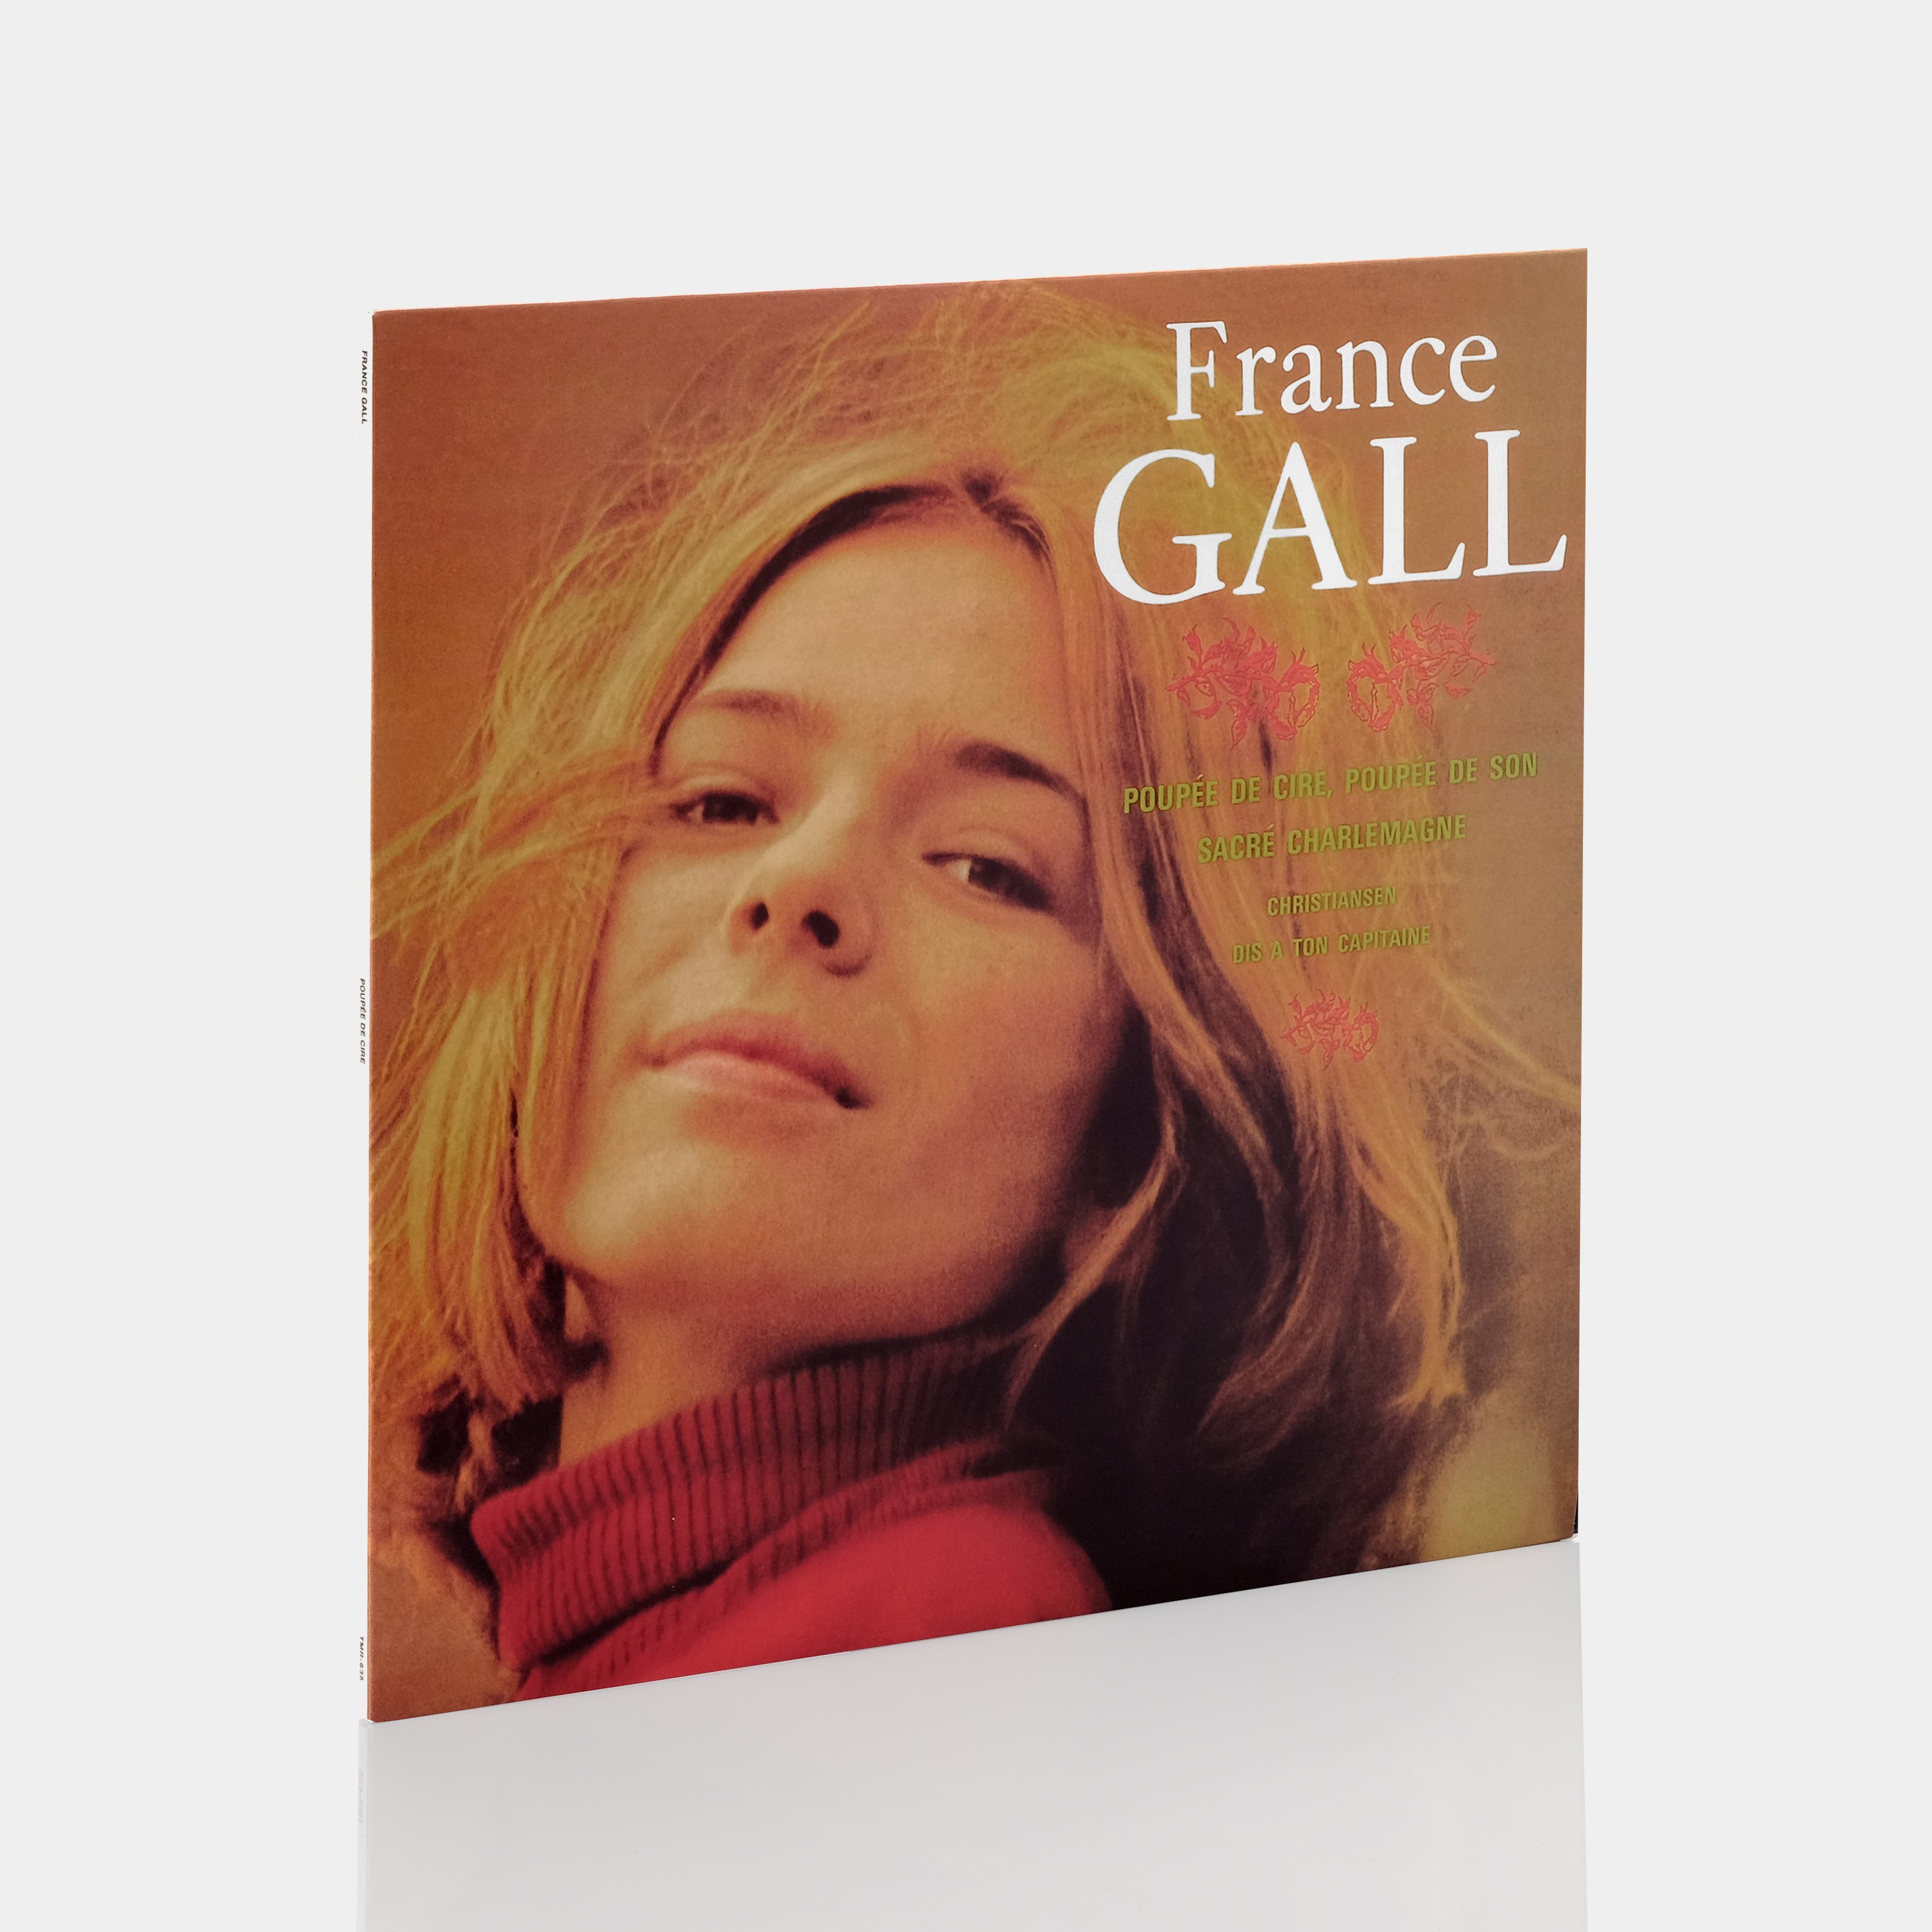 France Gall - Poupée De Cire Poupée De Son LP Vinyl Record